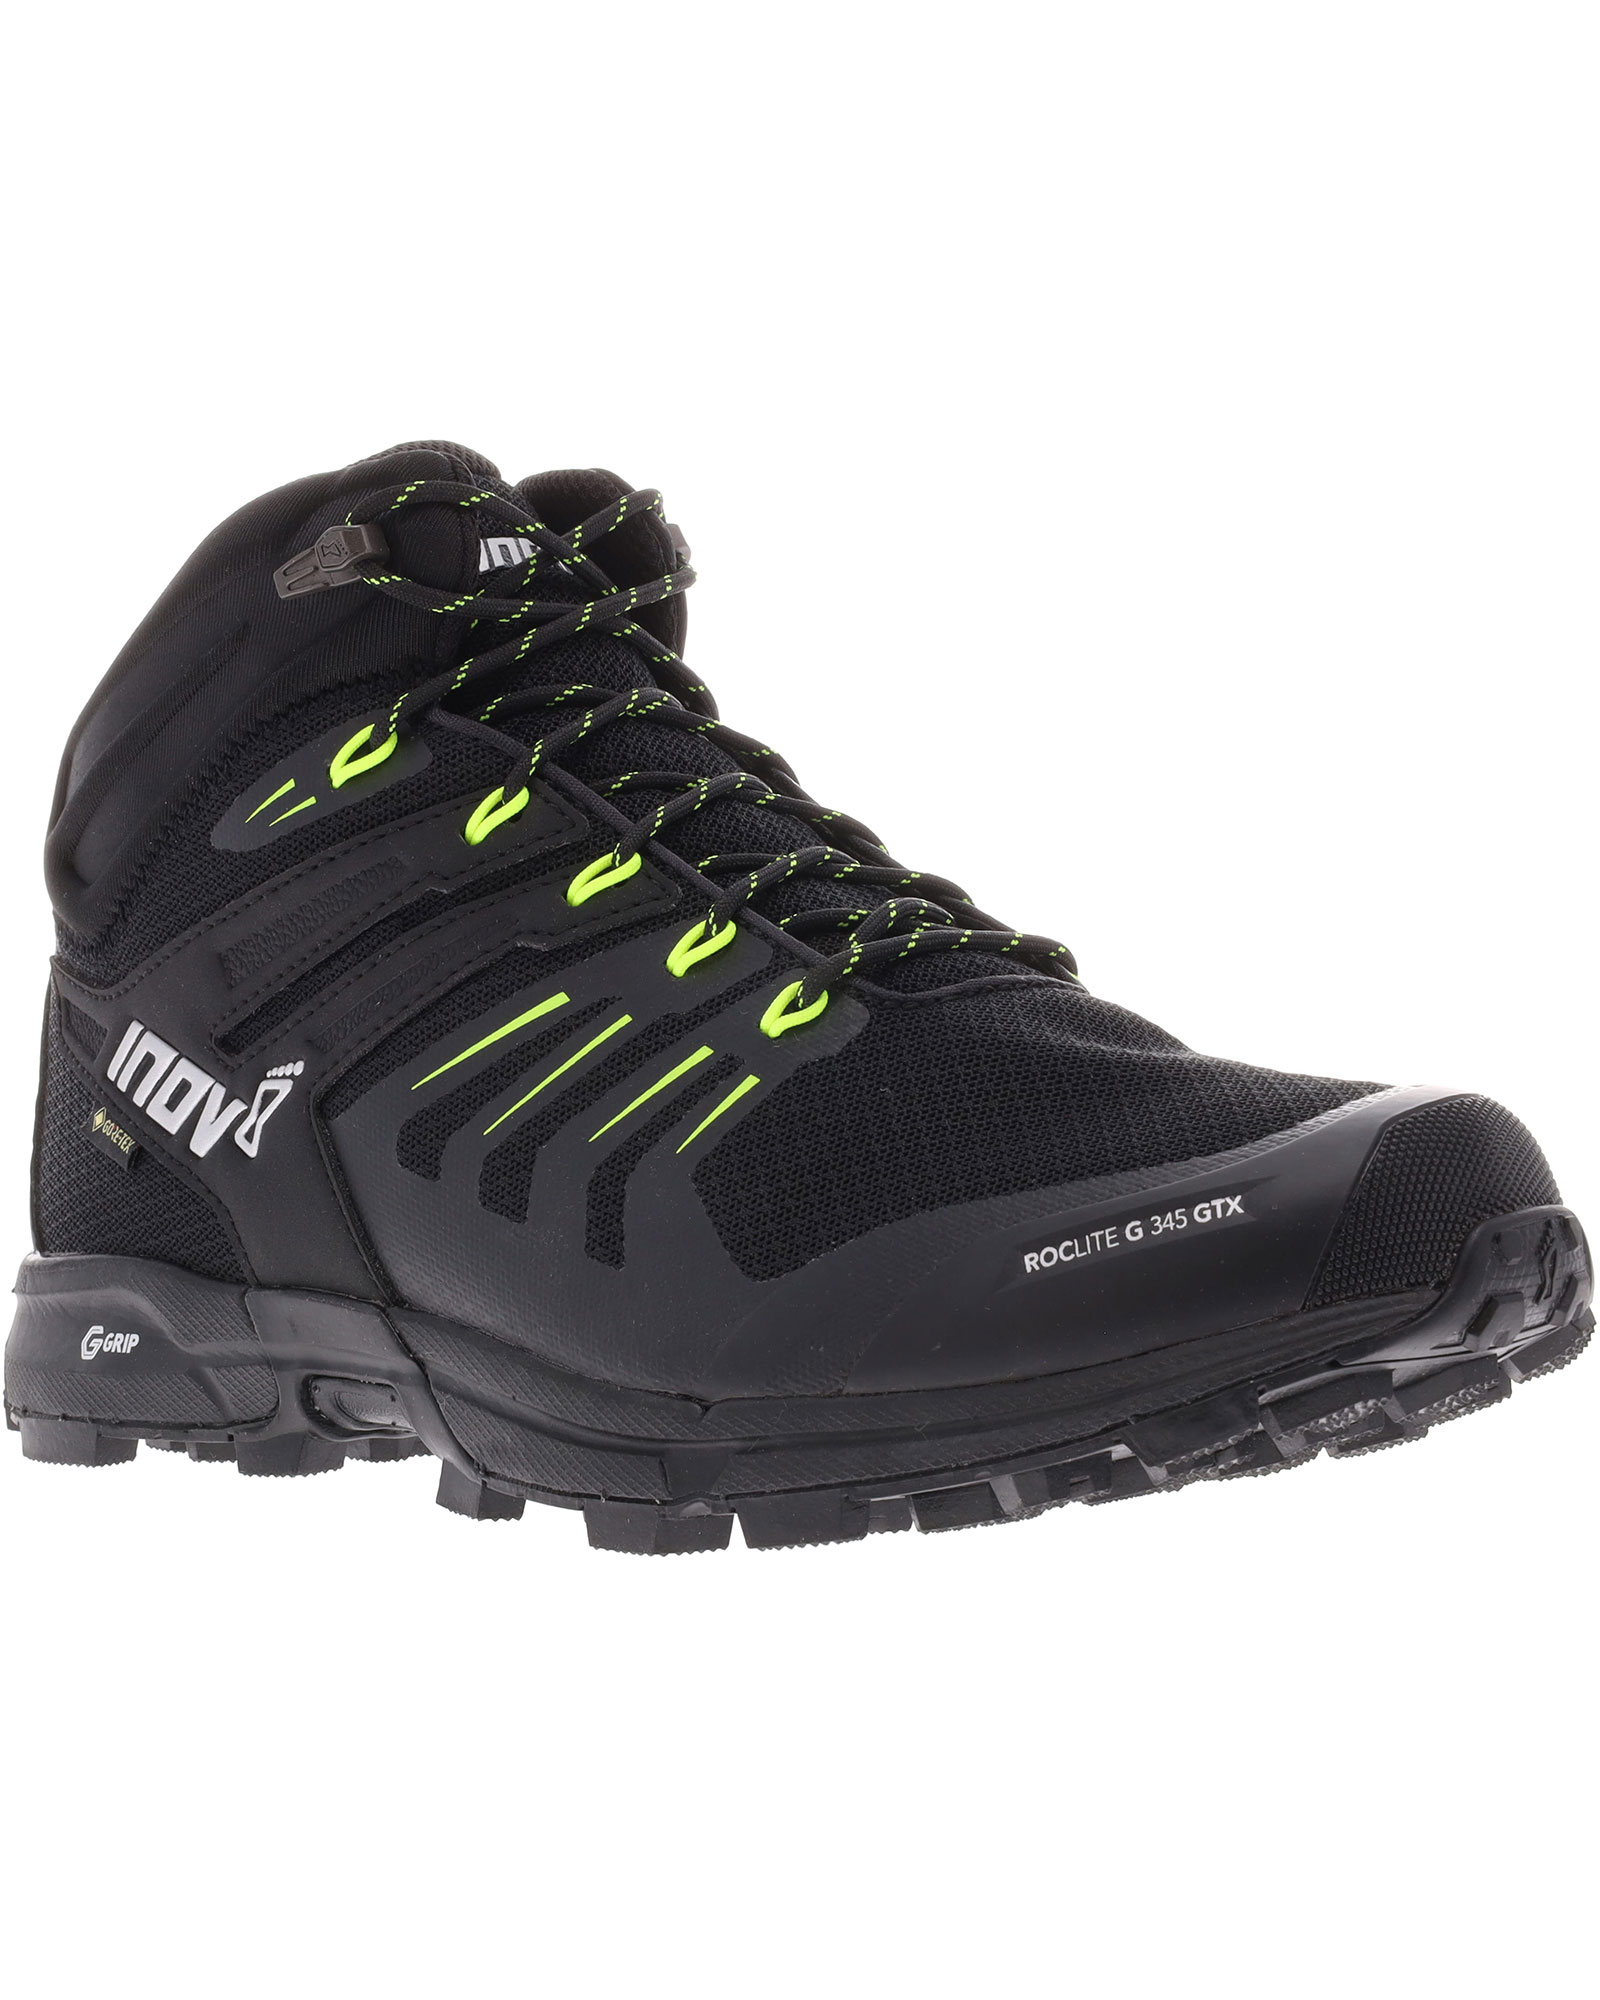 Inov 8 Roclite G 345 V2 GORE TEX Men’s Boots - Black/Lime UK 9.5